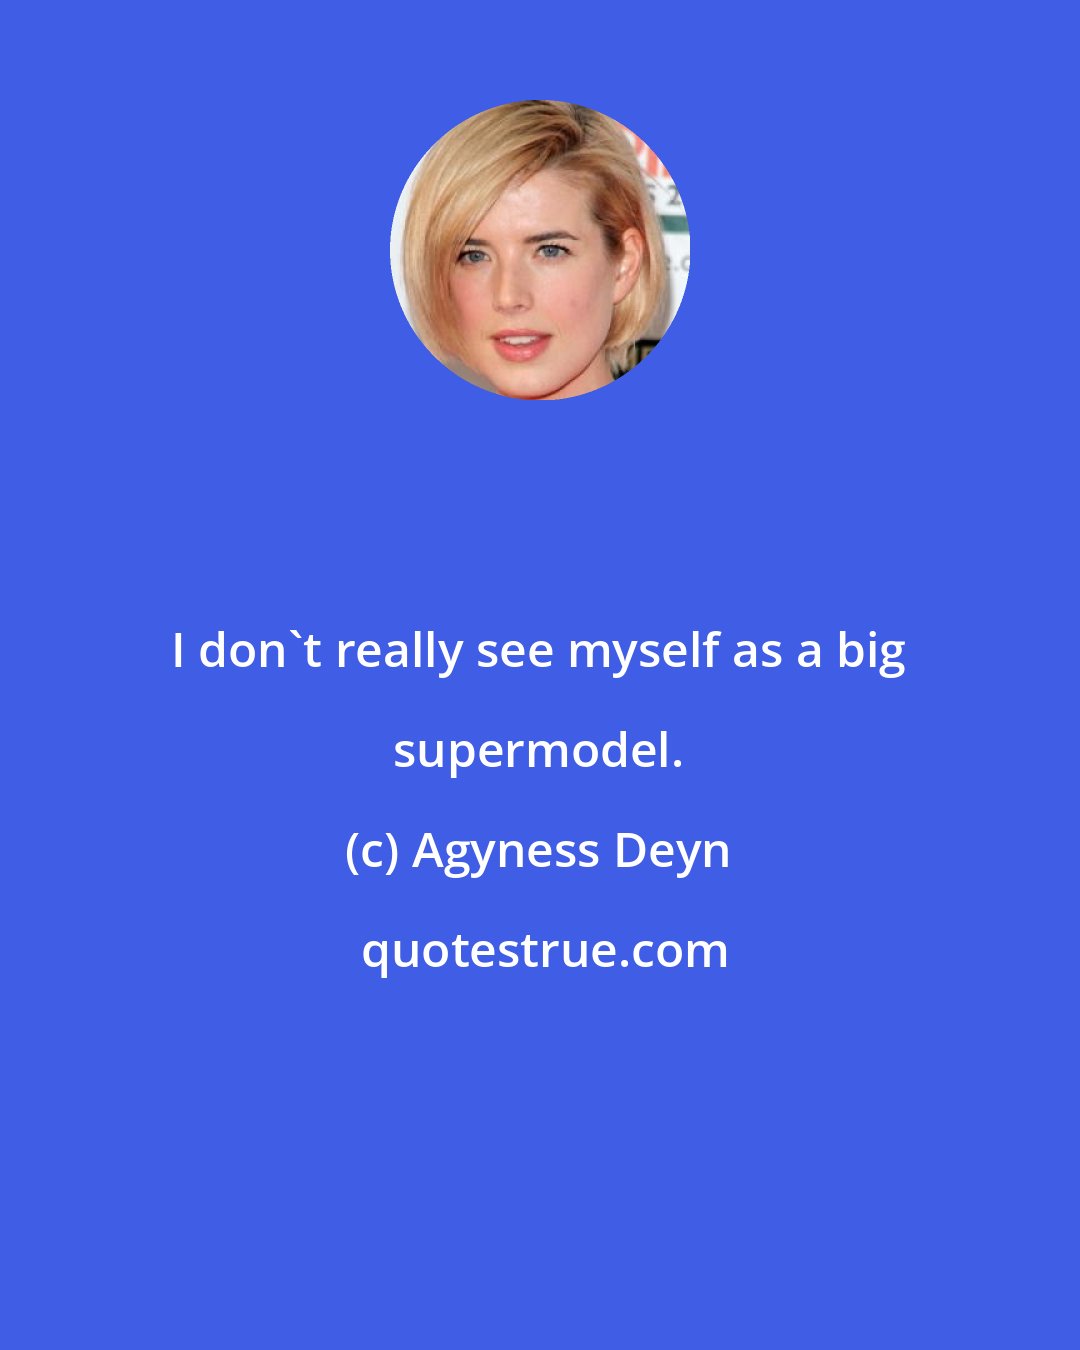 Agyness Deyn: I don't really see myself as a big supermodel.